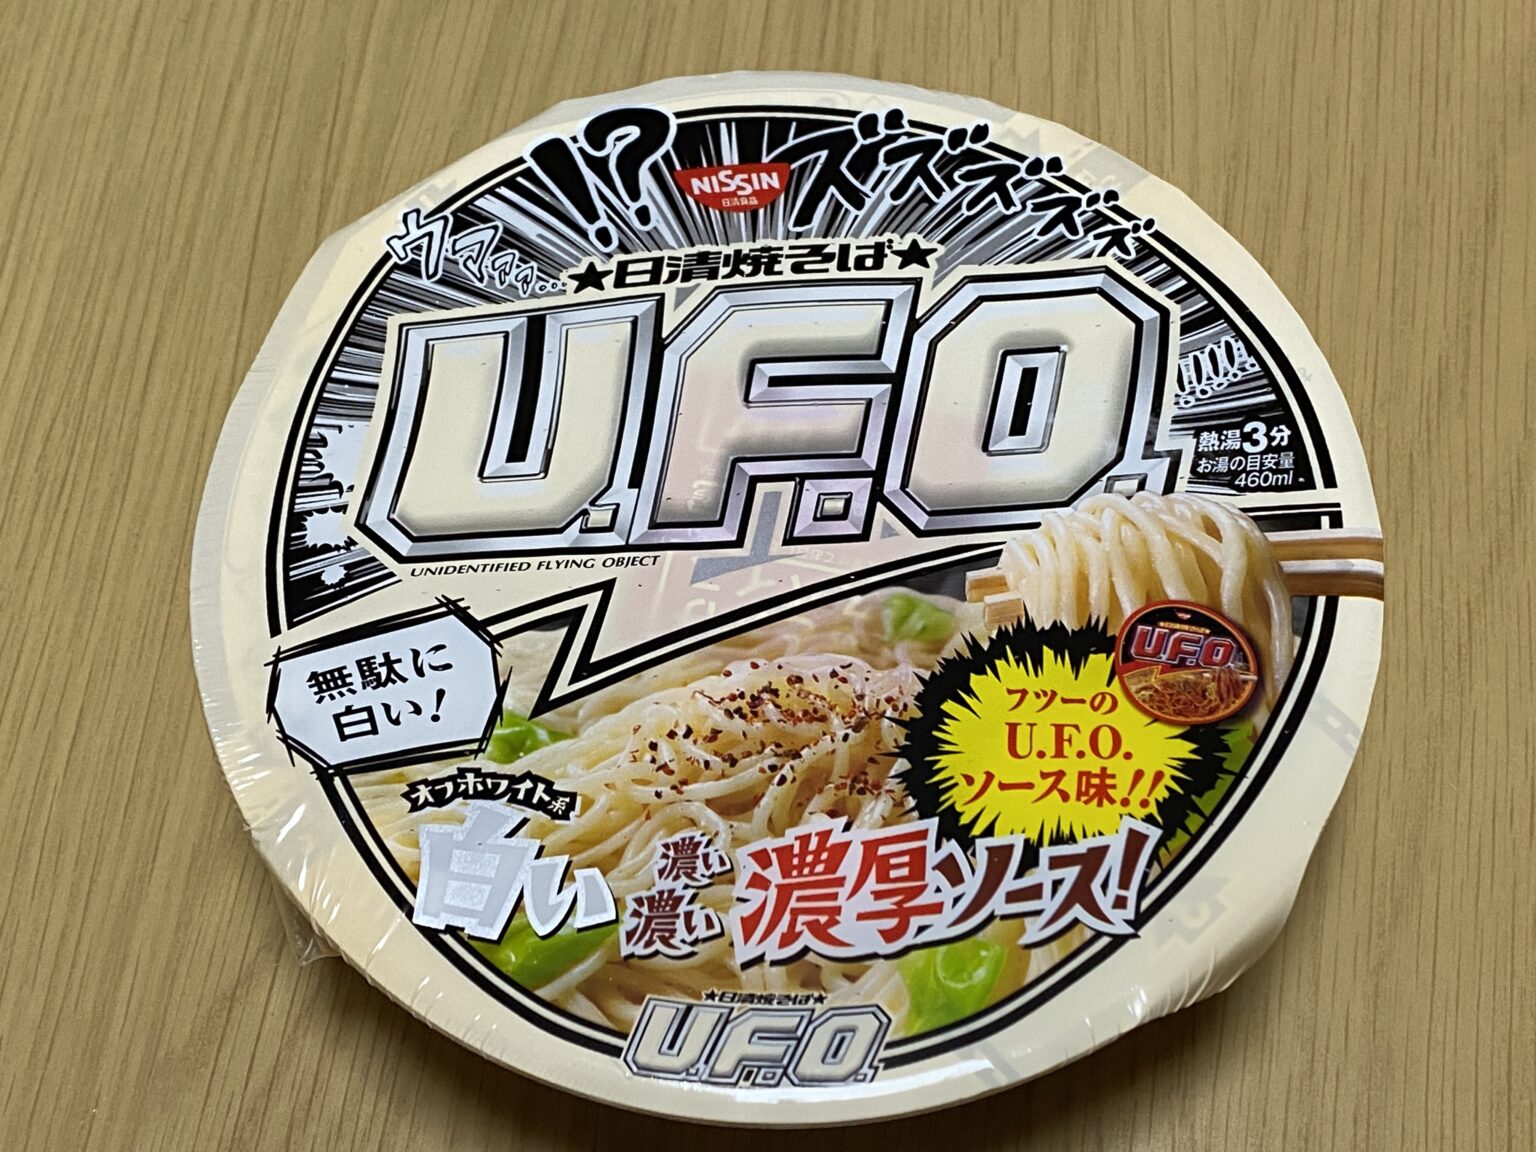 【焼きそば】無駄に白い日清UFO食べてみた | OdeyBlog